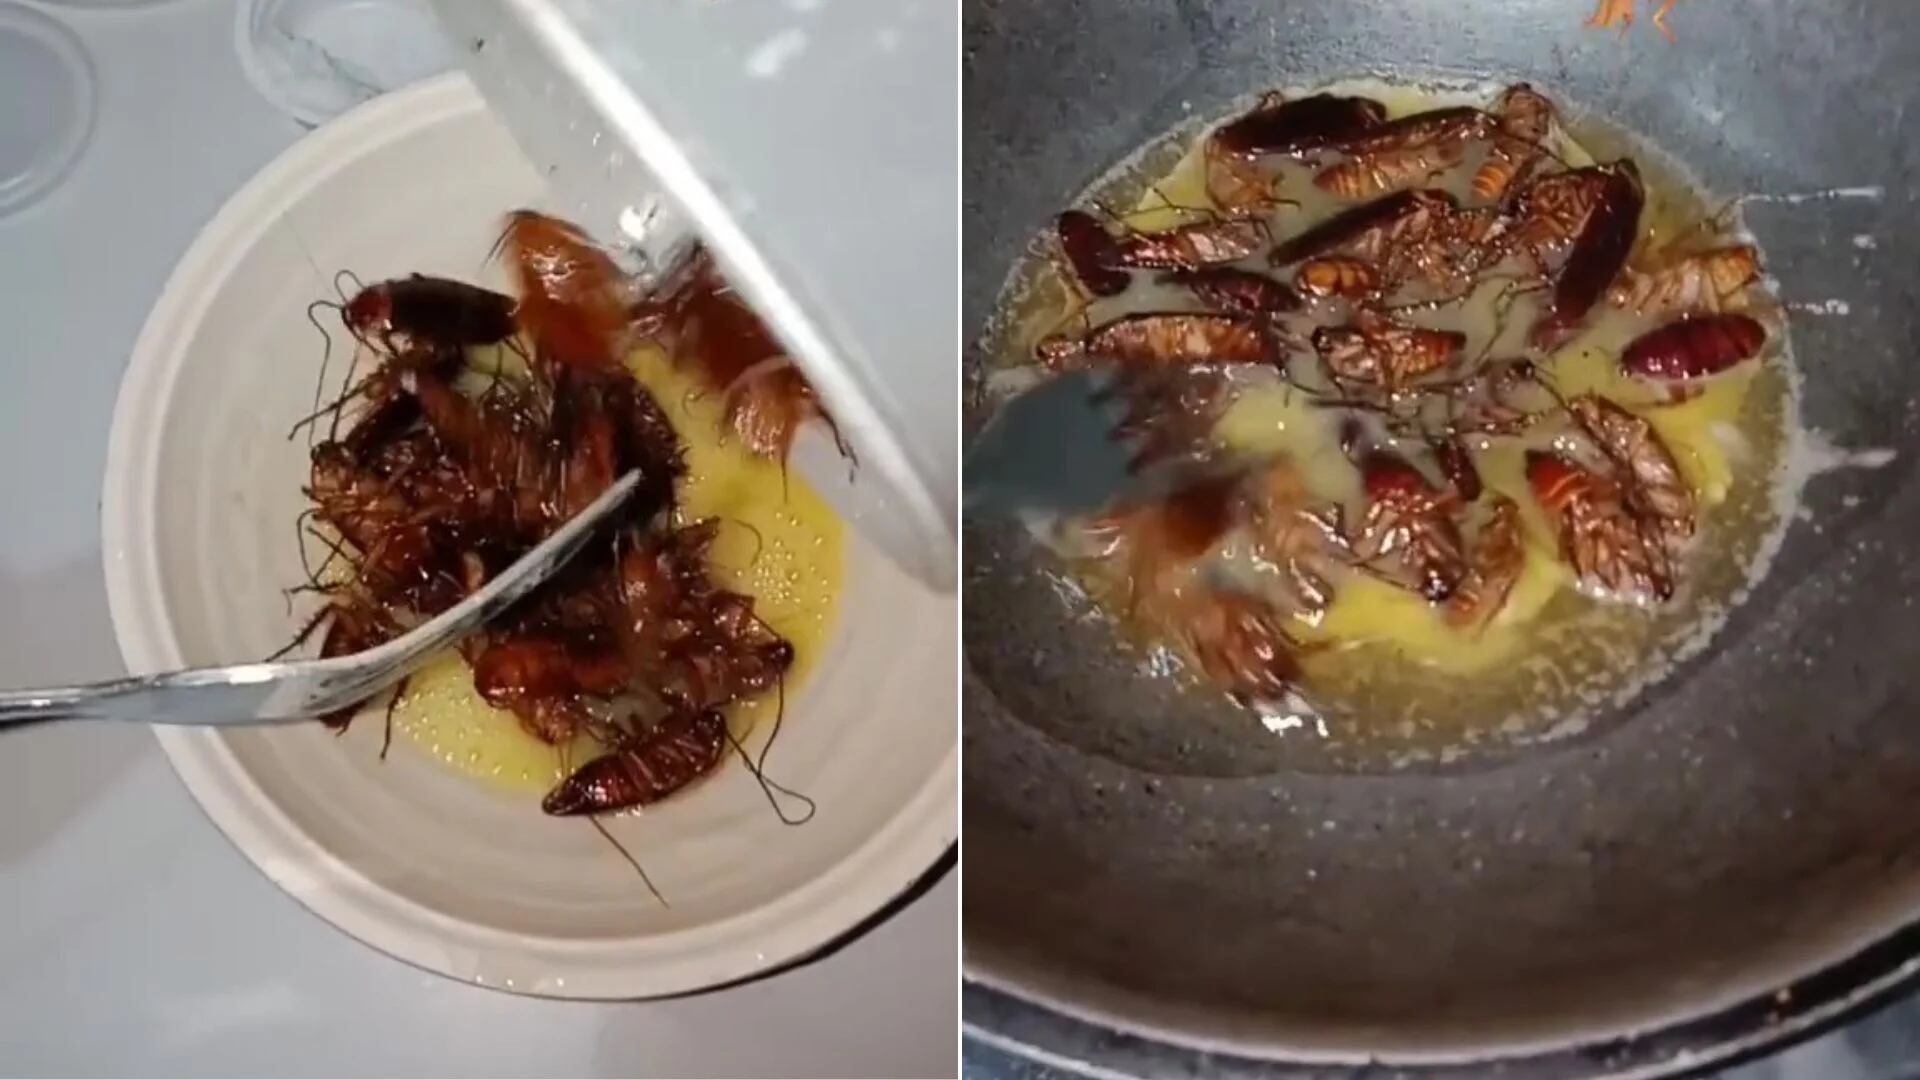 Realizó unos huevos revueltos con cucarachas y su plato se viralizó. (TikTok)